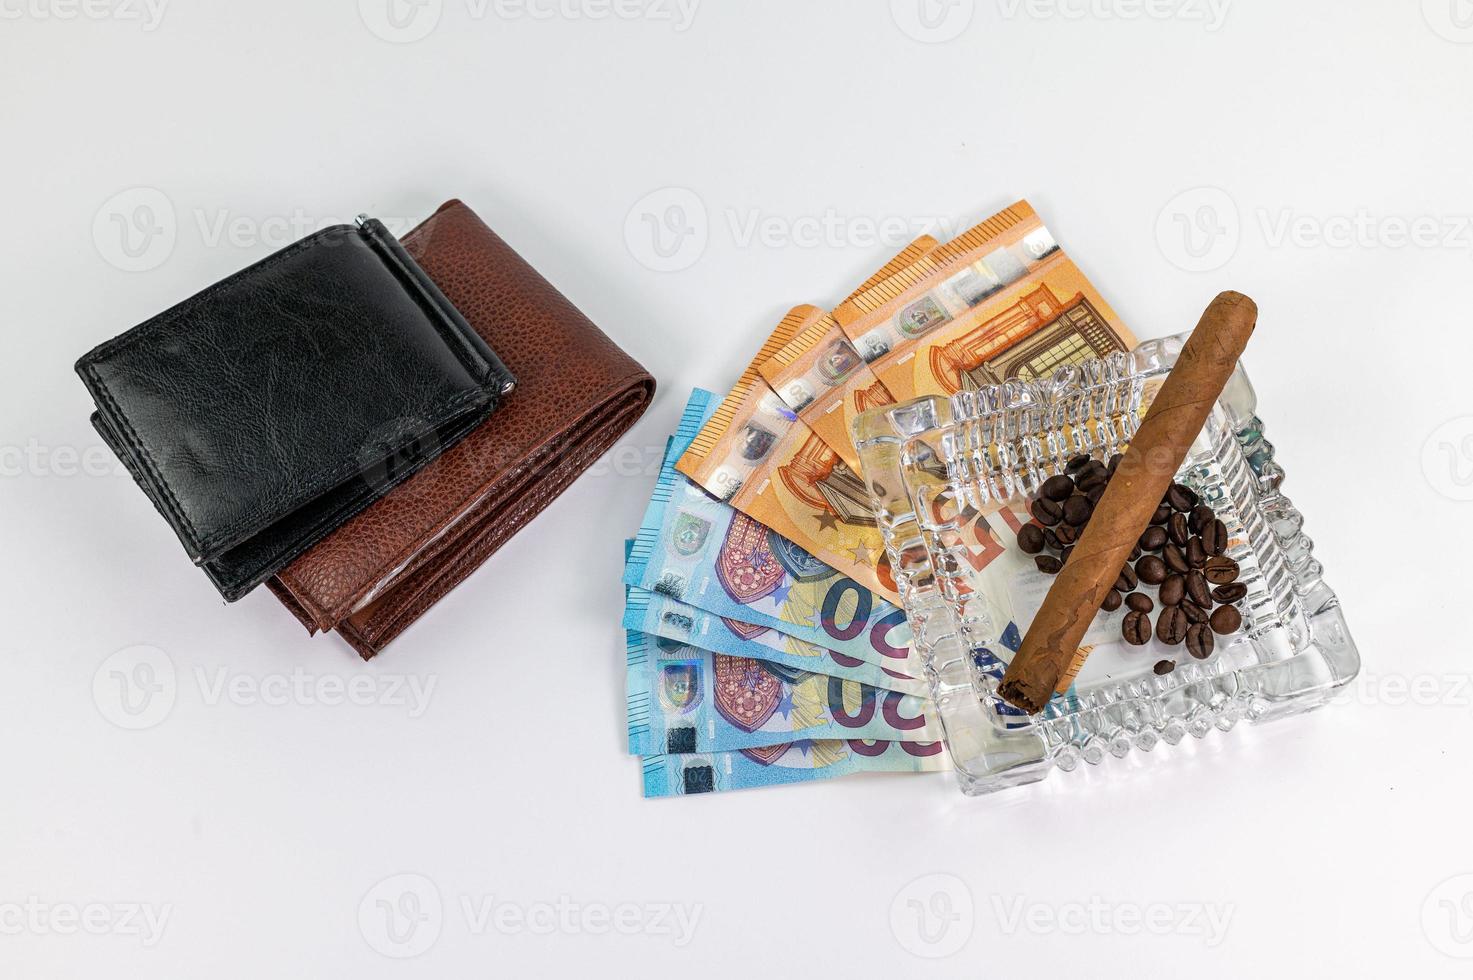 20 en 50 euro bankbiljetten en portemonnee en sigaar foto